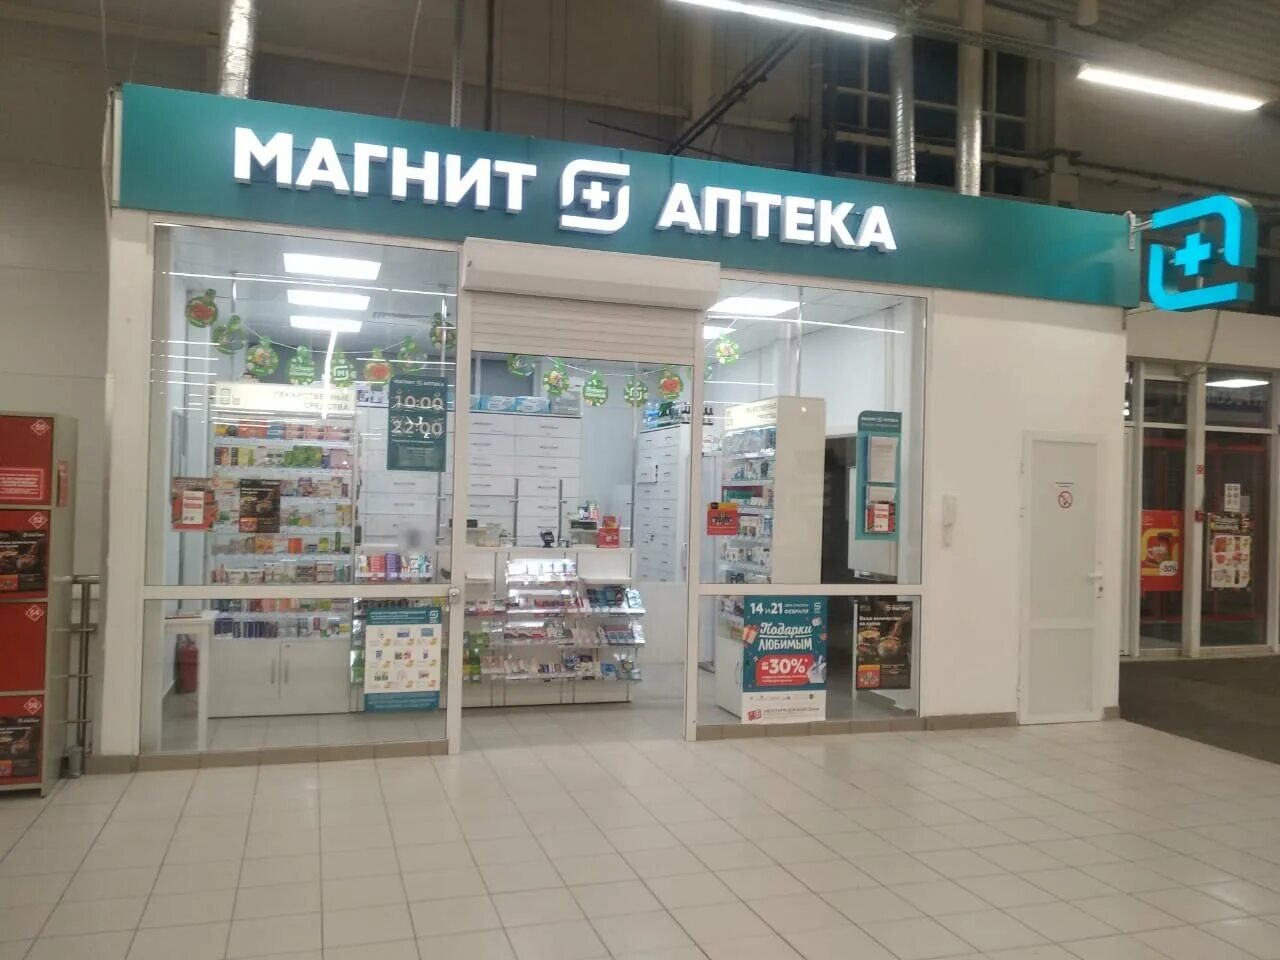 Кирова 33 Екатеринбург магнит. Магнит аптека. Магнит аптека вывеска. Магазин магнит аптека.